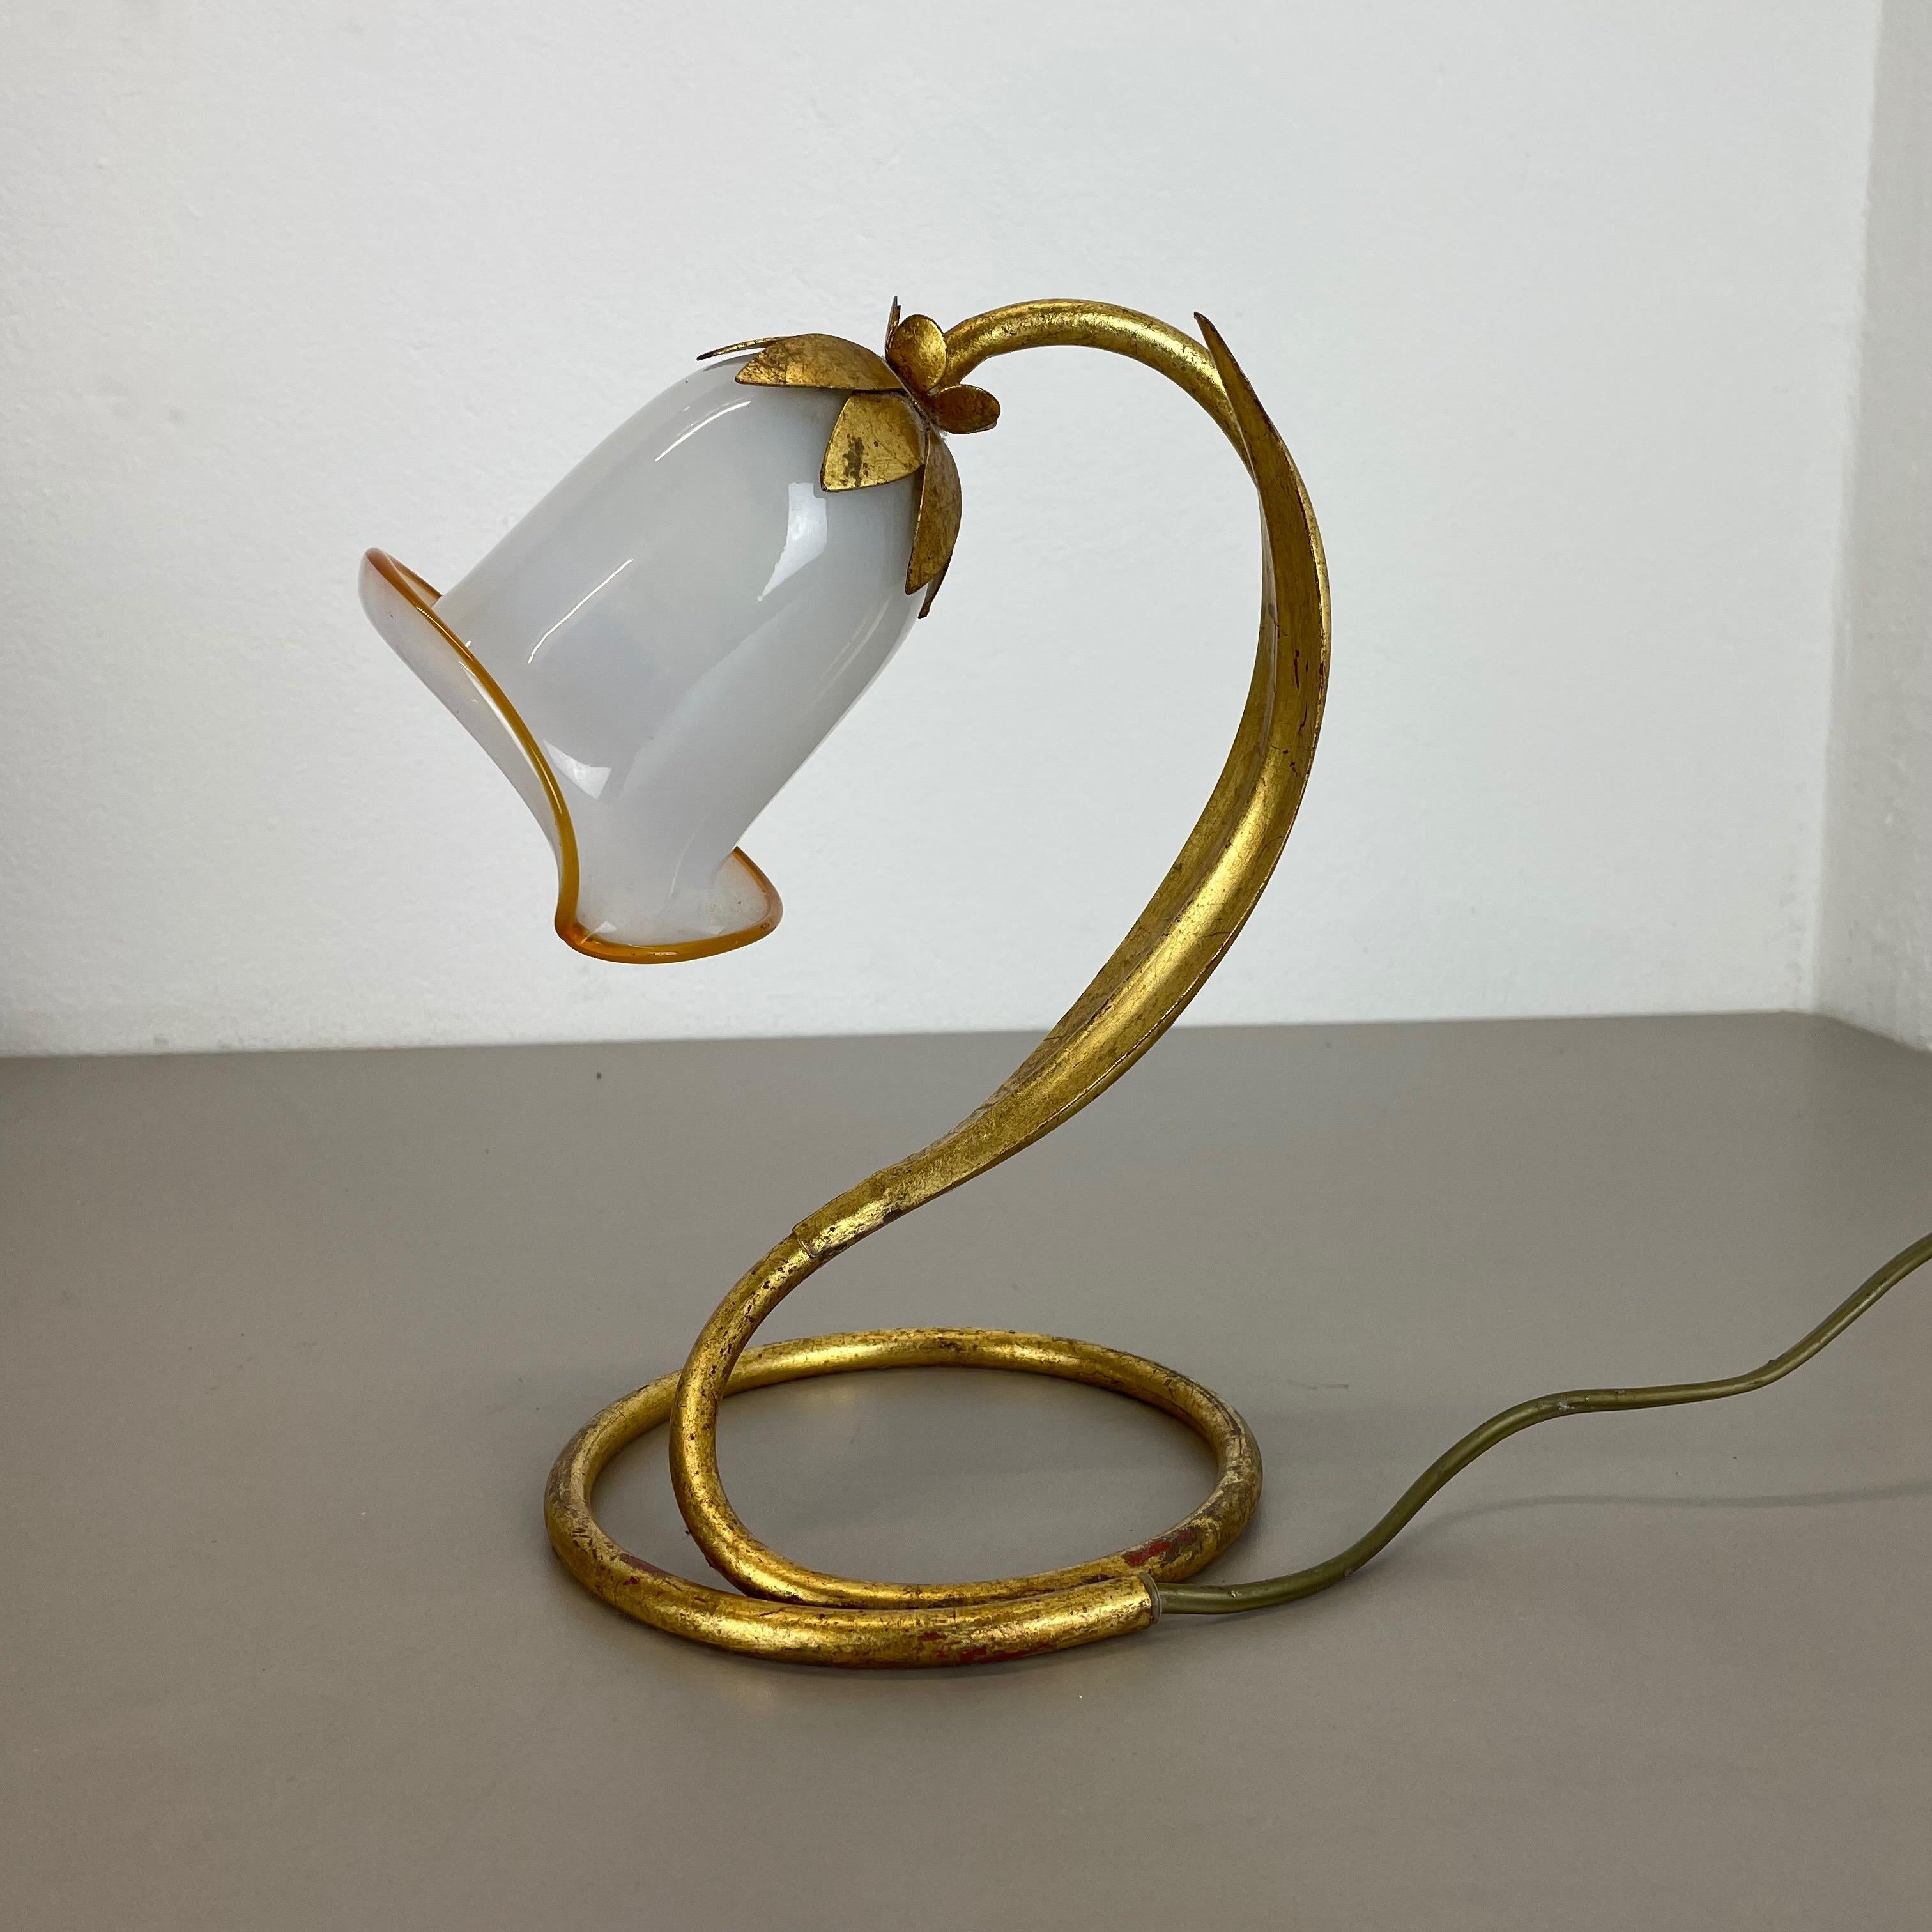 Article :

Lampe de table avec abat-jour en verre Murano


Origine :

Italie



Âge :

1970s.



Ce luminaire moderniste a été produit en Italie dans les années 1970. Elle est faite de métal massif en forme de fleur avec un élément de prise